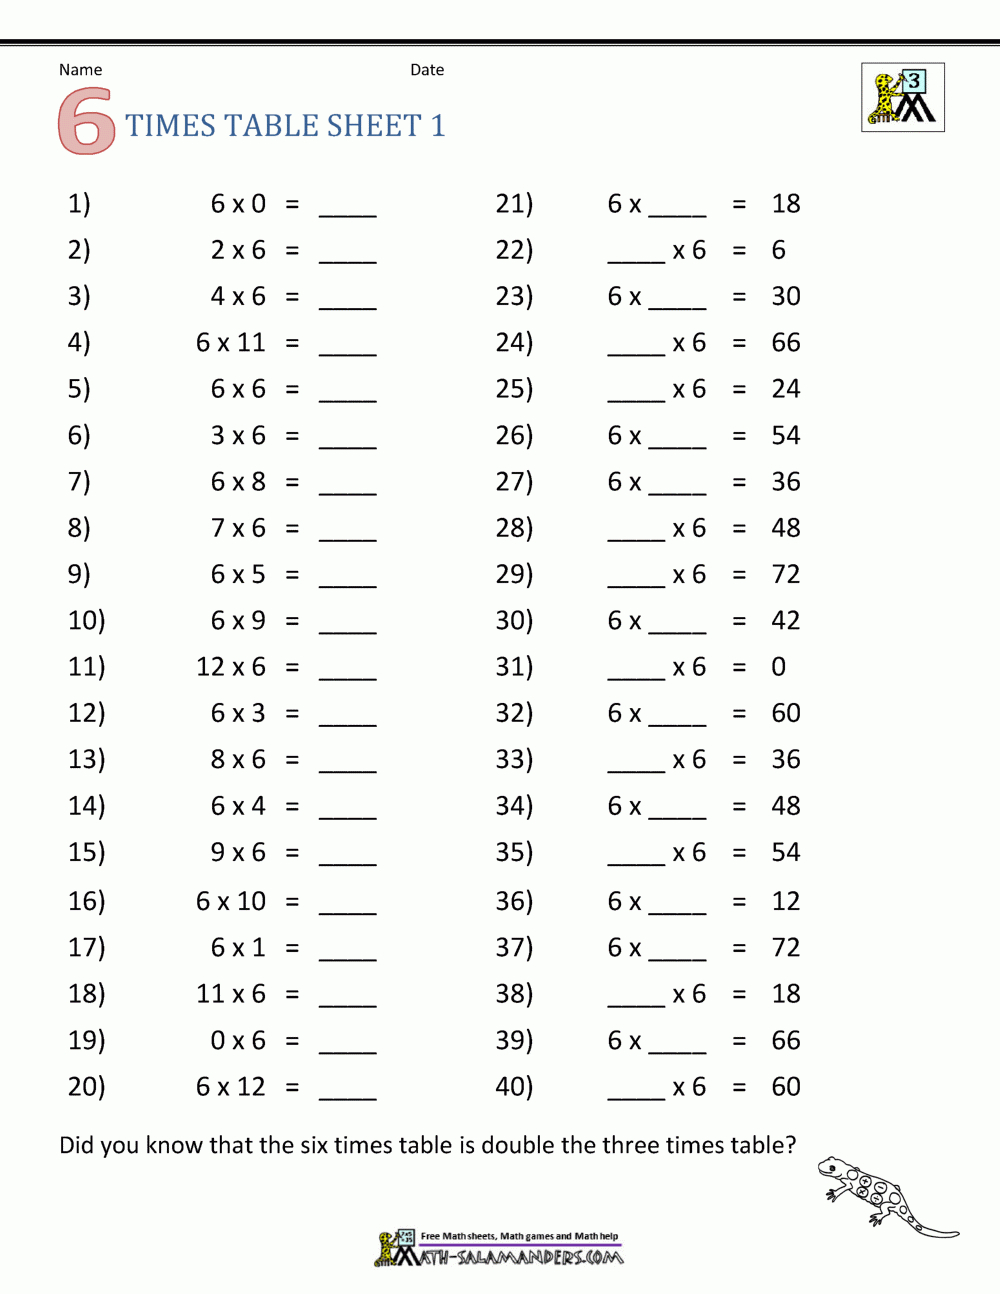 Multiplication Drill Sheets 3Rd Grade pertaining to Worksheets Multiplication 3Rd Grade